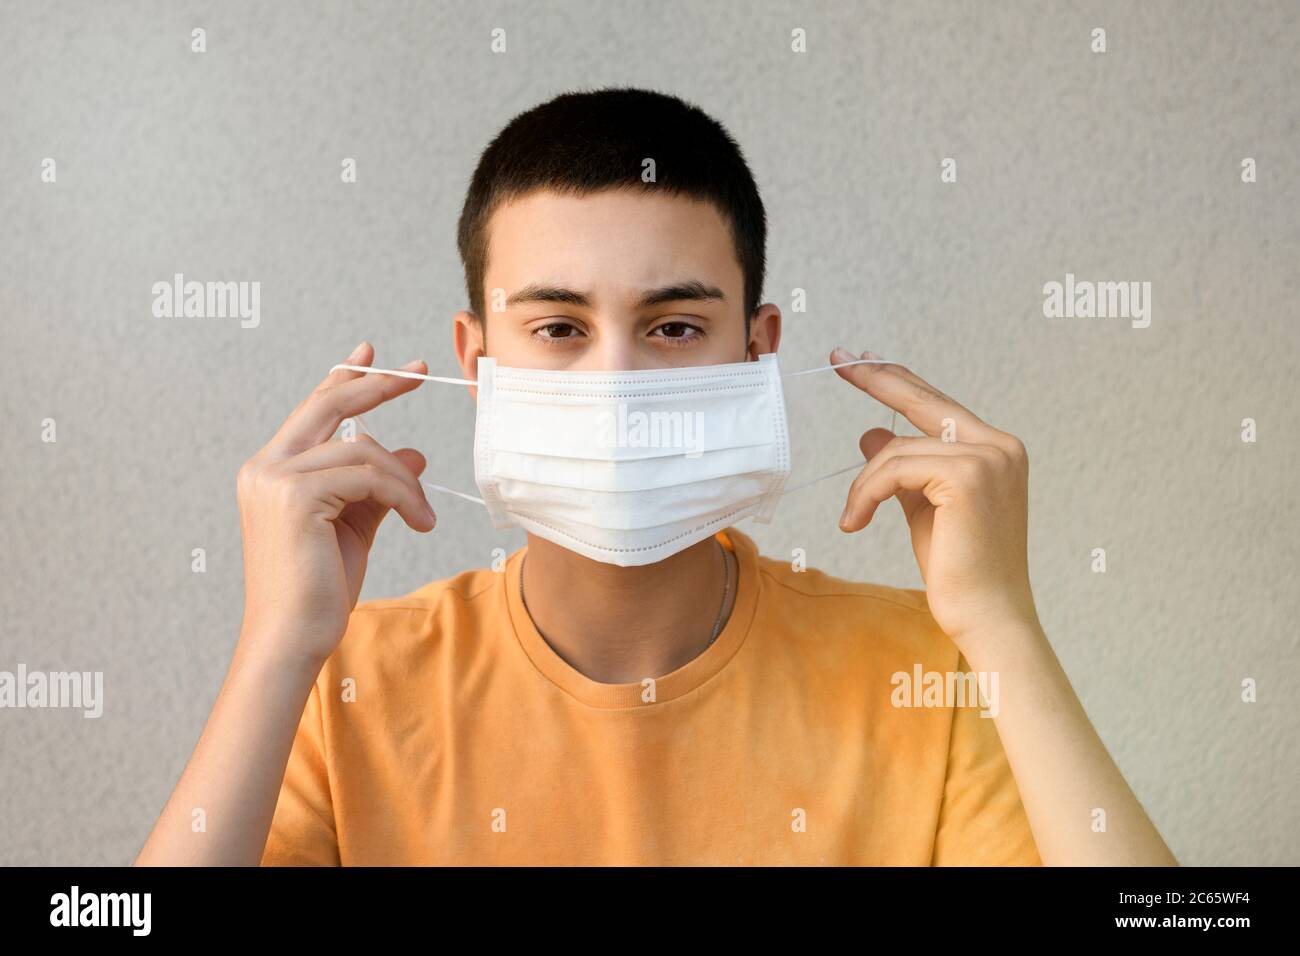 Adolescente sosteniendo una máscara en las manos frente a su cara para el control de la infección durante el coronavirus o la pandemia de Covid-19 contra un blanco Foto de stock